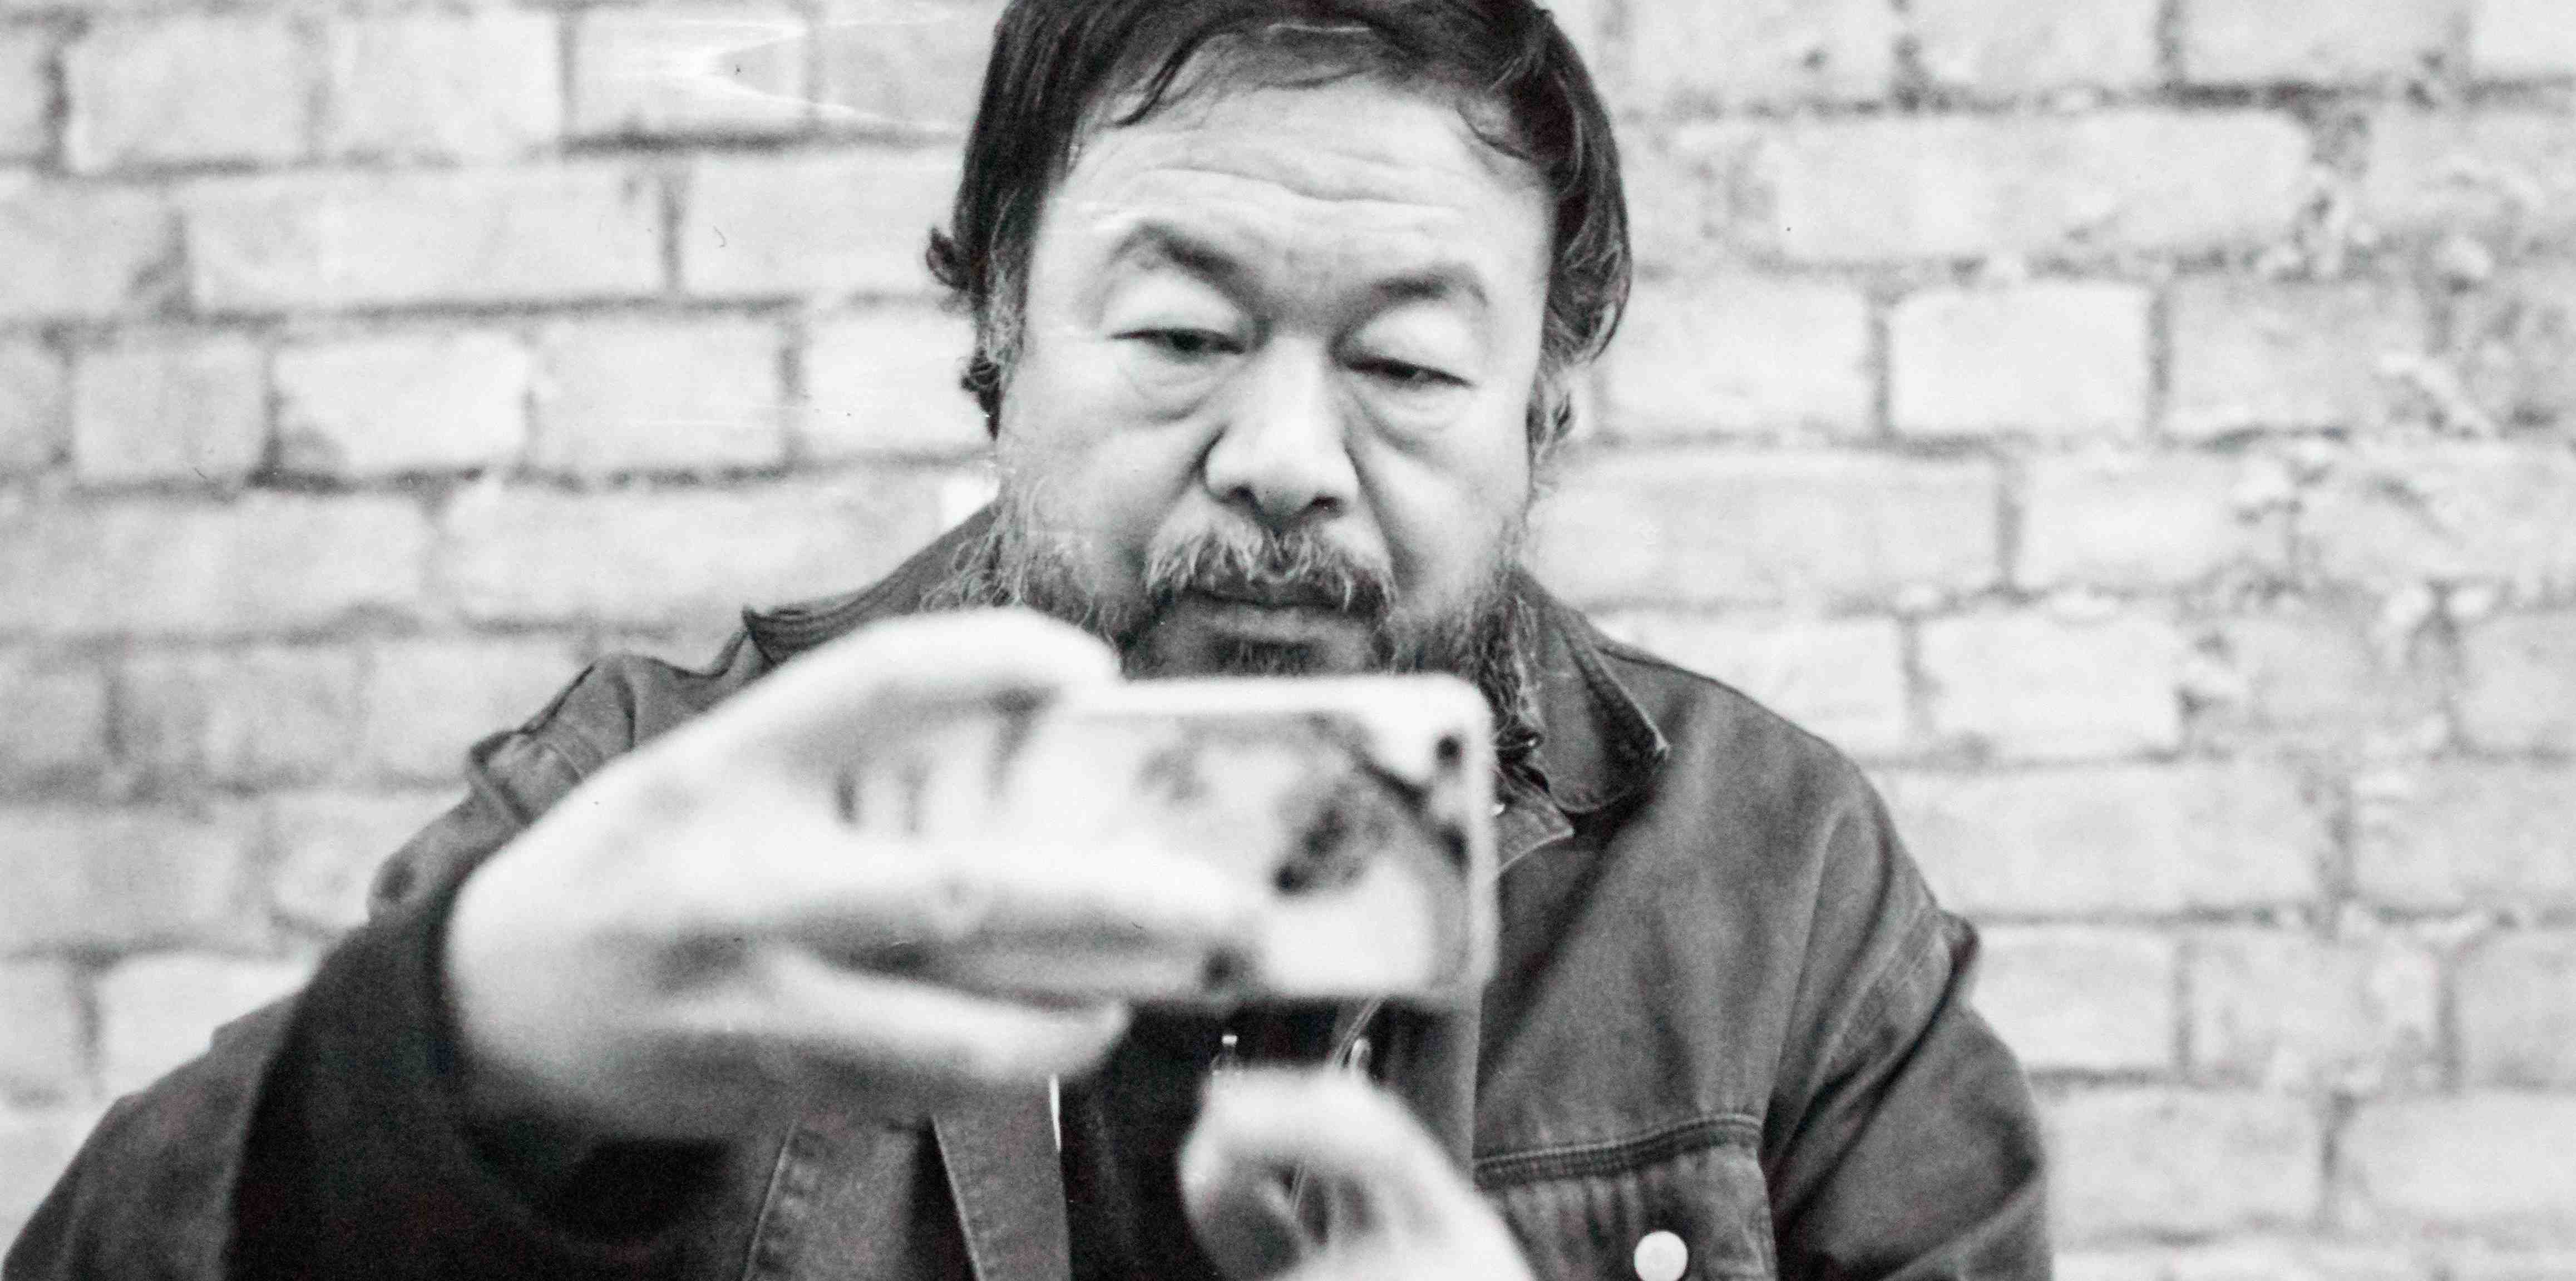 Der chinesische Künstlerdissident Ai Weiwei bei der Arbeit.